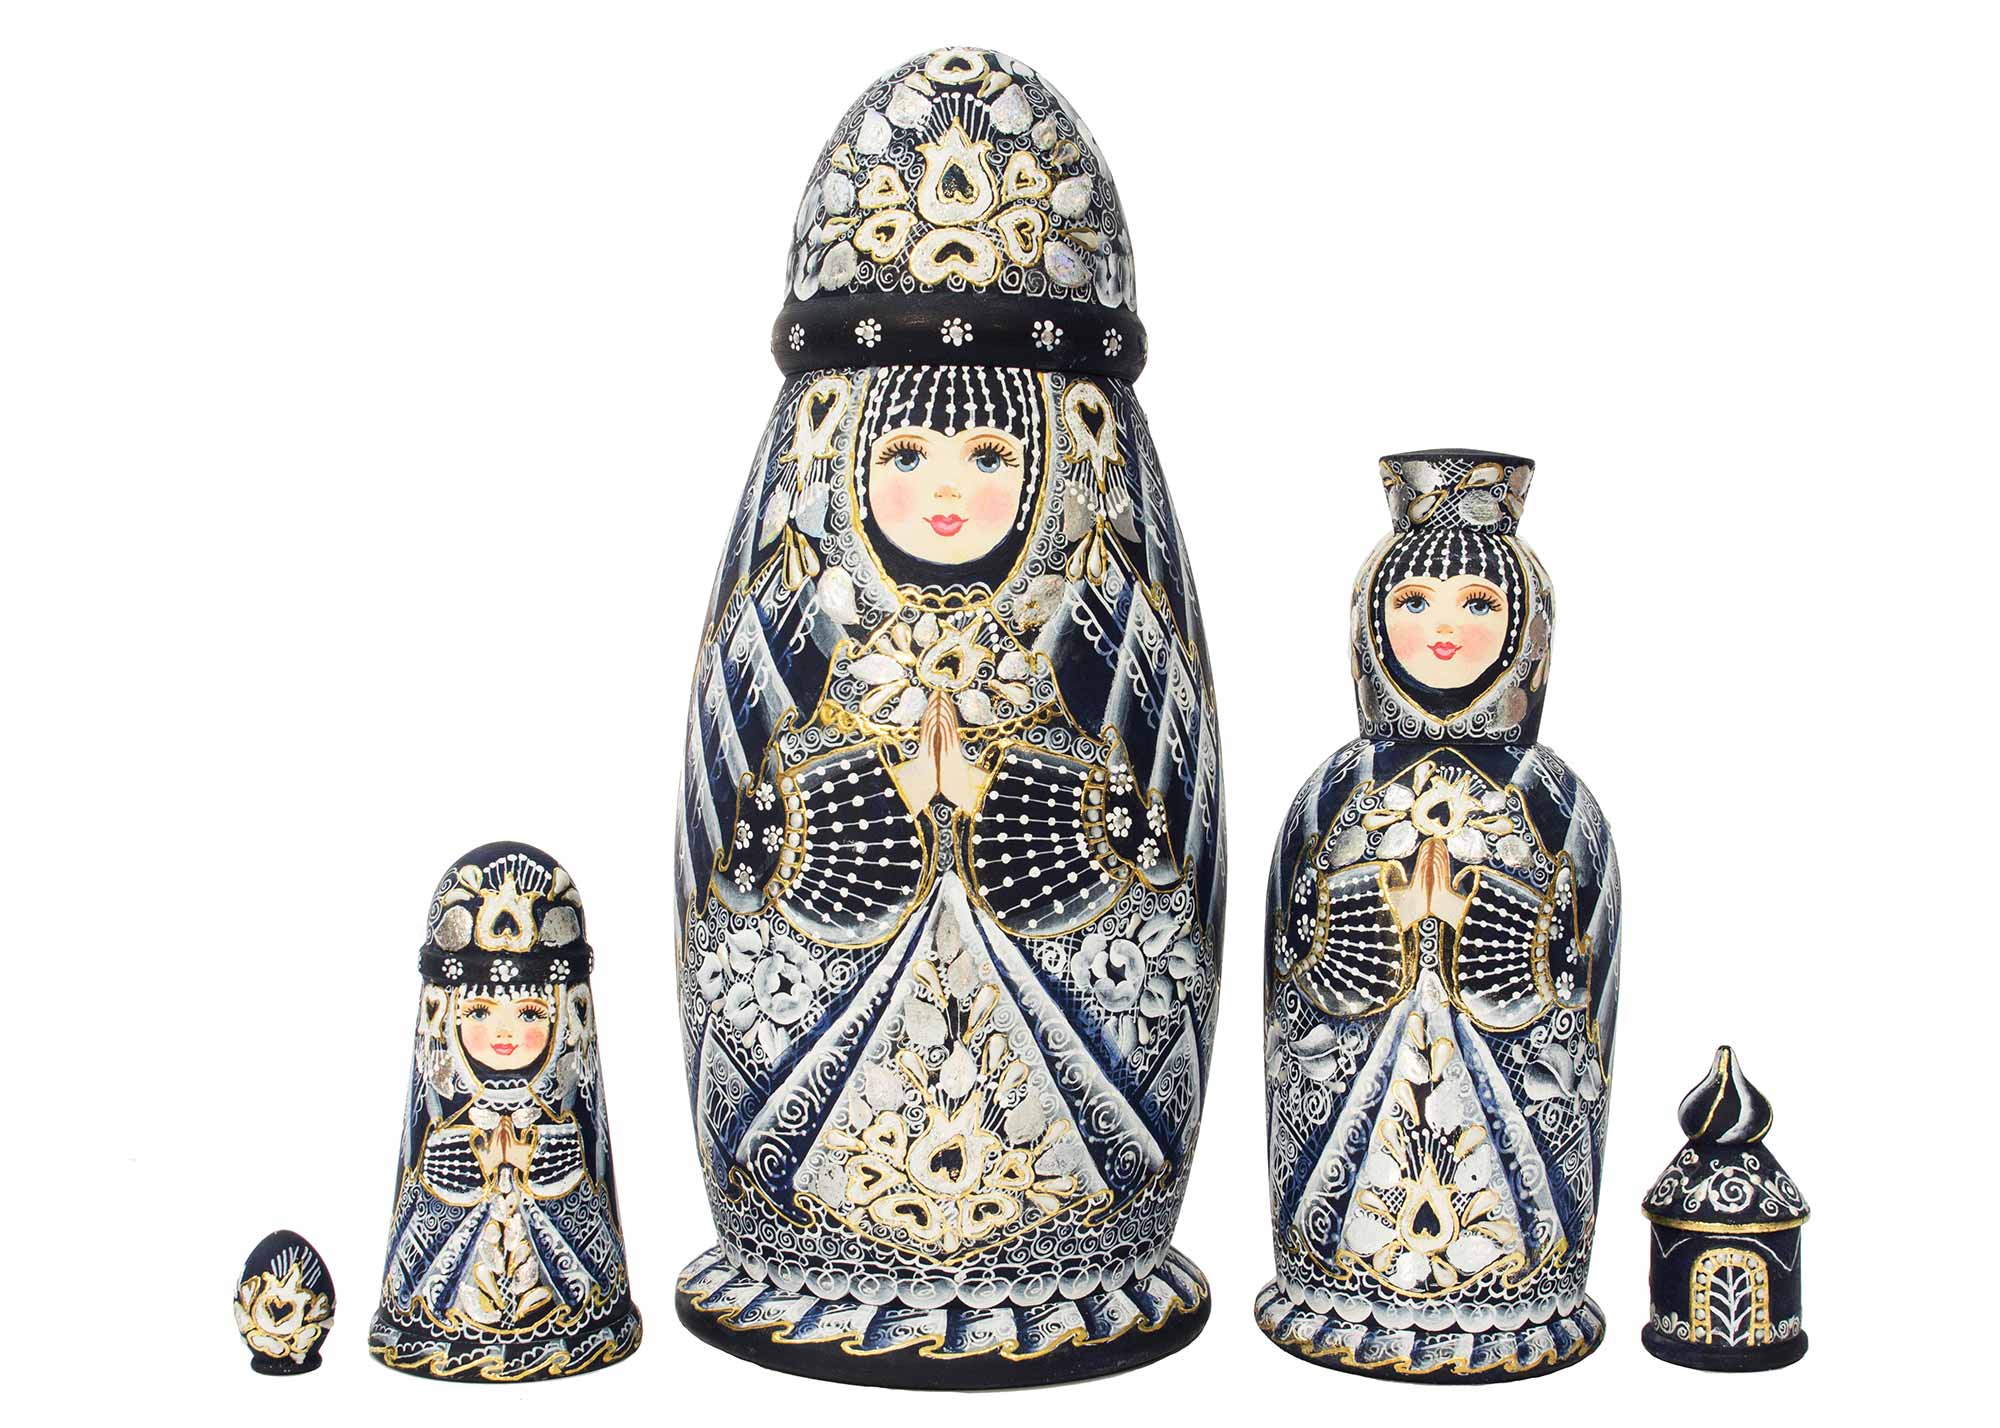 Buy Boyarynya Nesting Doll 5pc./9" at GoldenCockerel.com